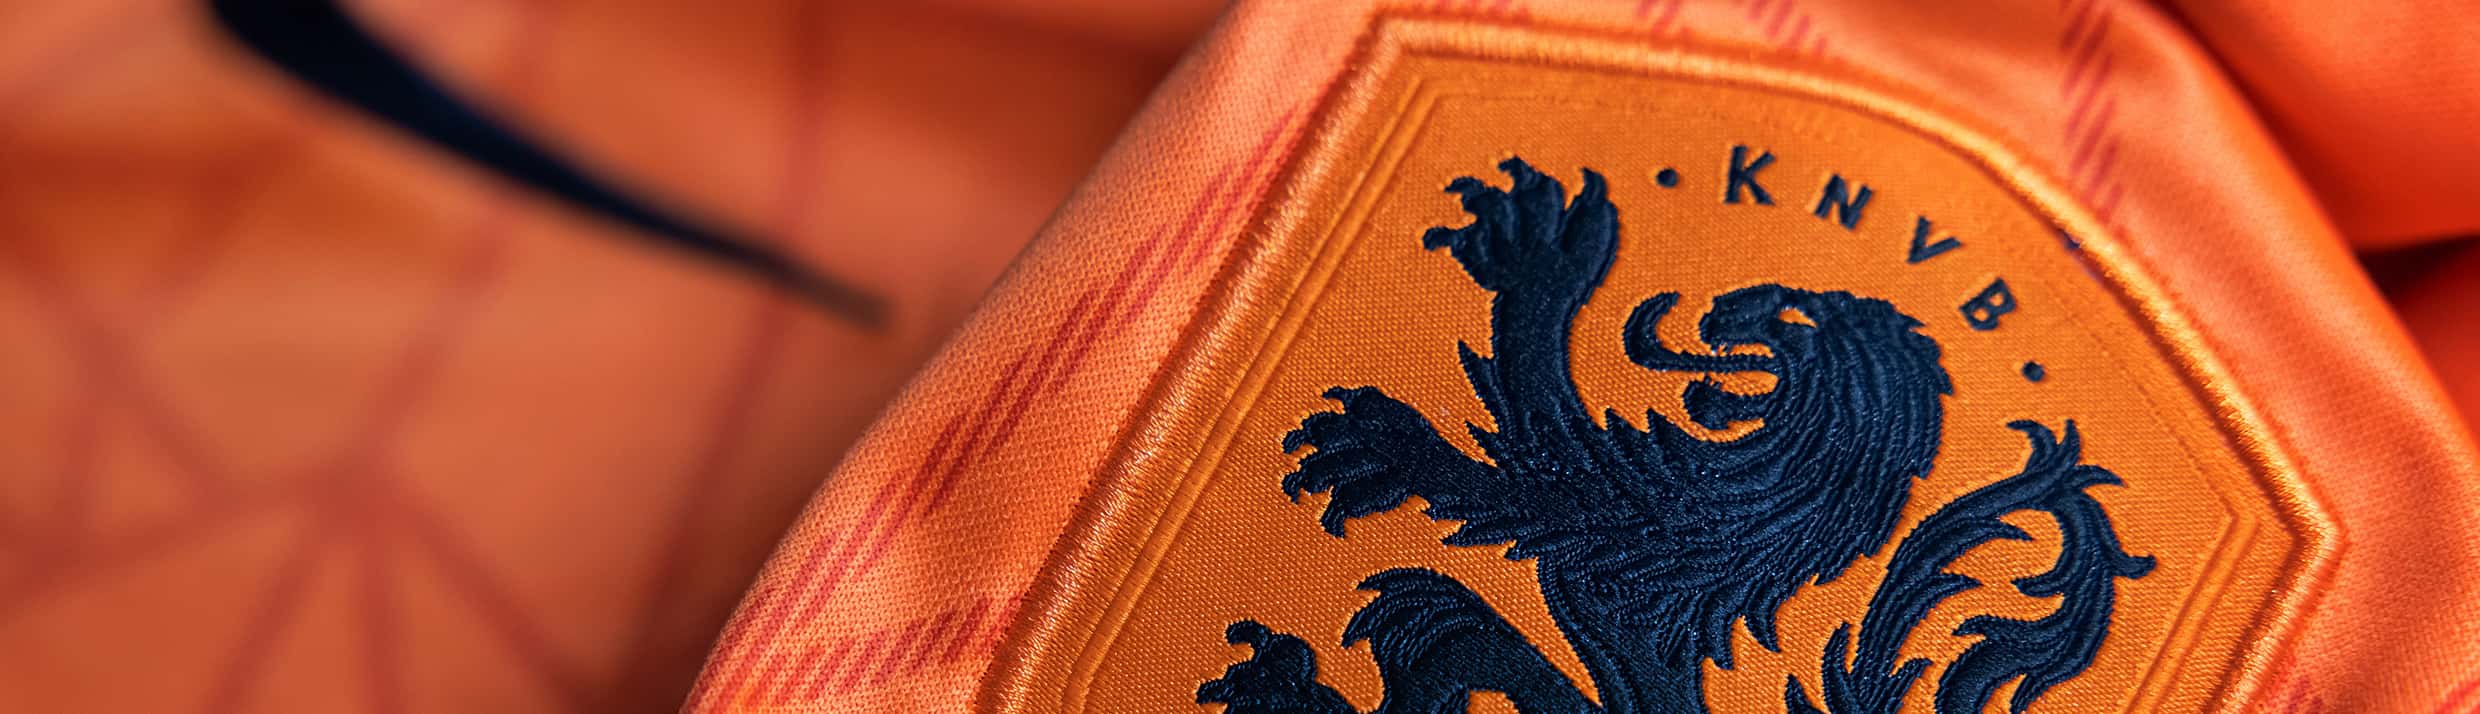 Oranje EK elftal wedstrijd thuis shirt, rechts op de borst is de Oranje Leeuw te zien en het logo van KNVB.